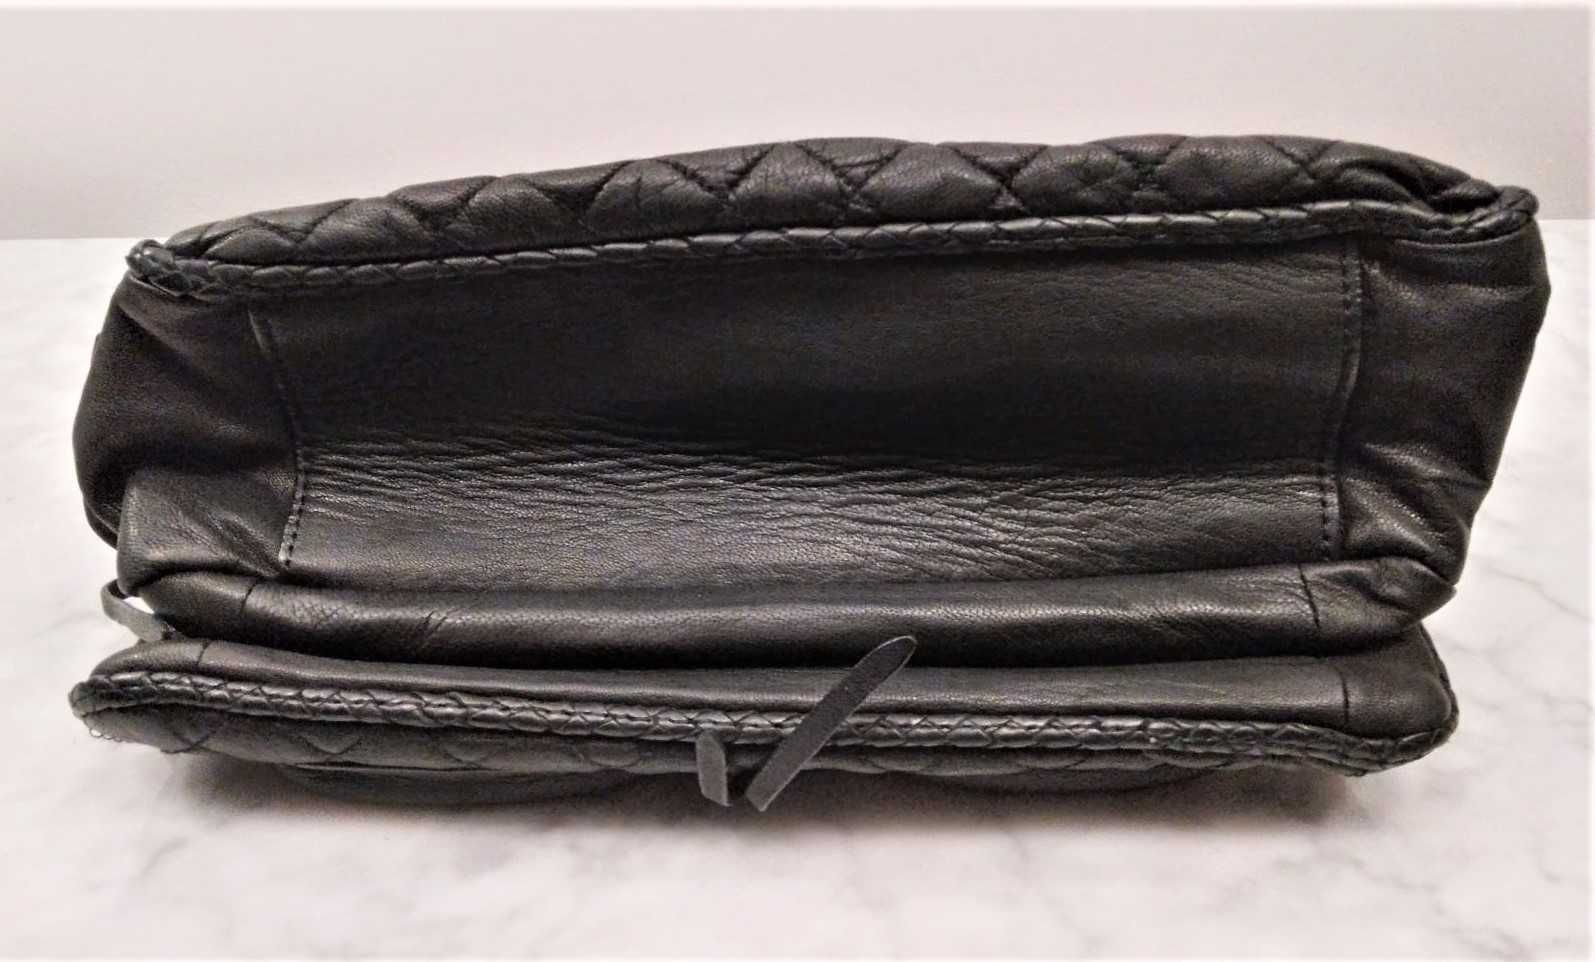 Skórzana pikowana torebka na ramię firmy Zara